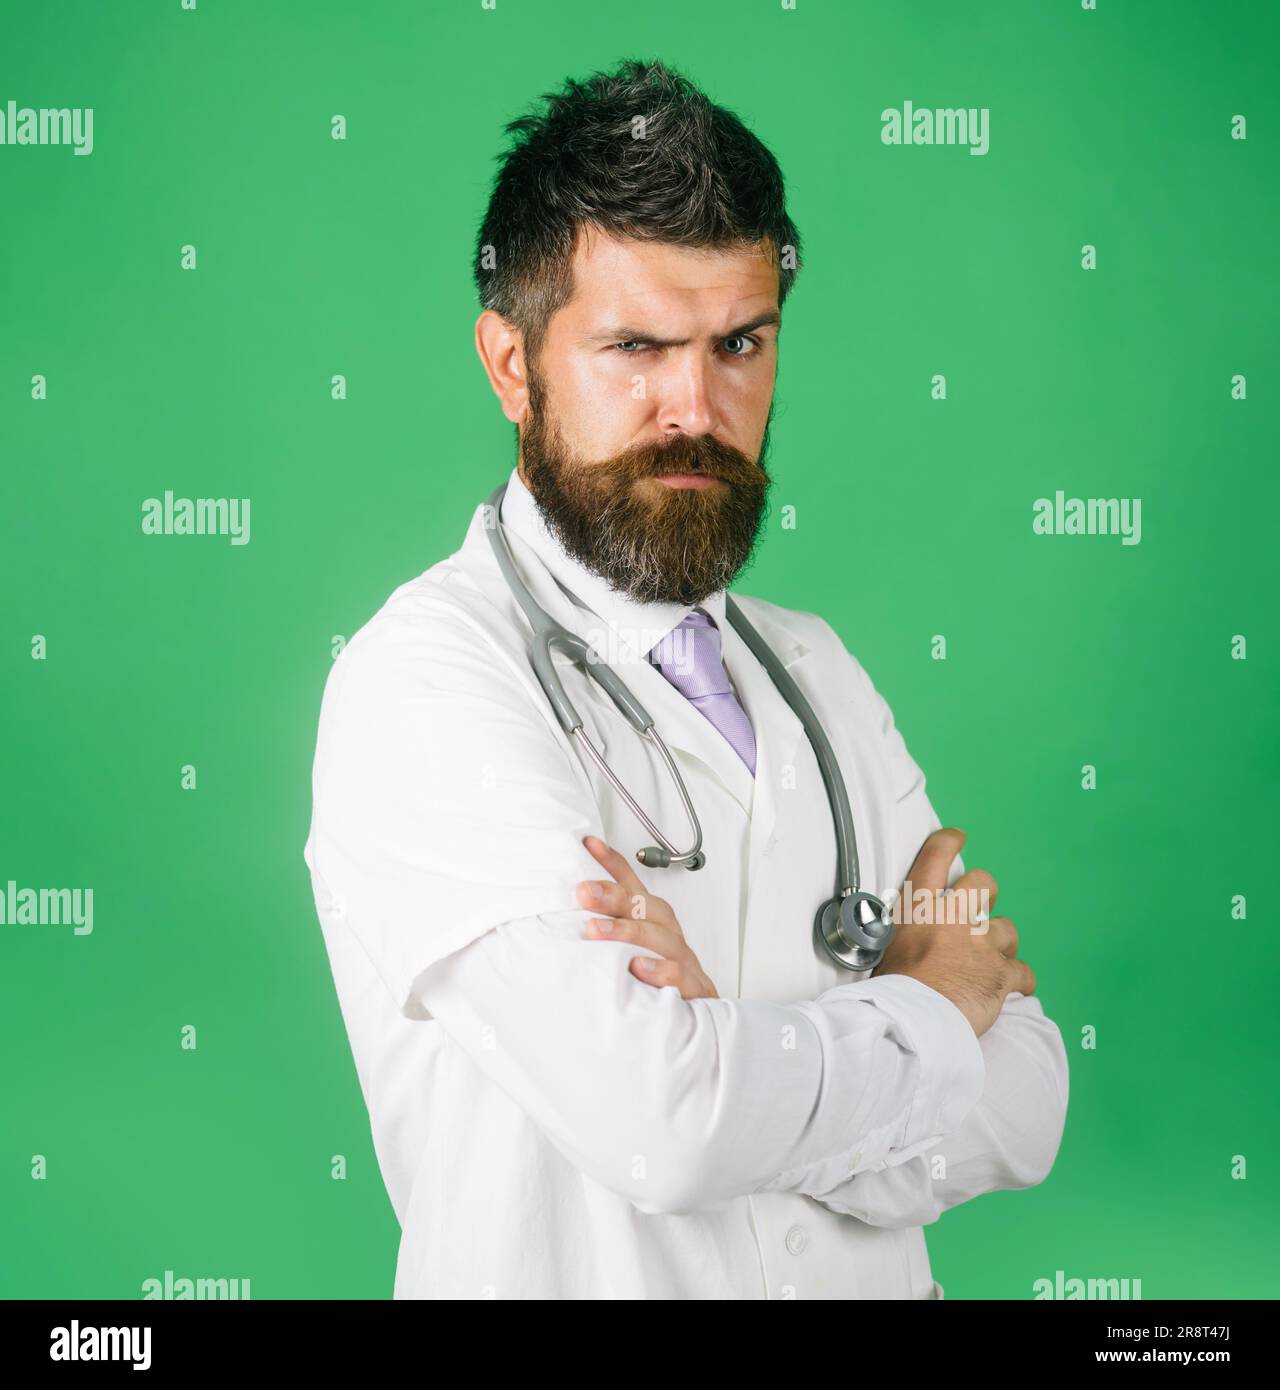 Seriöser Arzt in Arbeitskleidung mit gekreuzten Armen. Arzt im weißen Arztröbchen mit Stethoskop am Hals. Männlicher Arzt im Arztkleid mit gefalteten Armen. Stockfoto